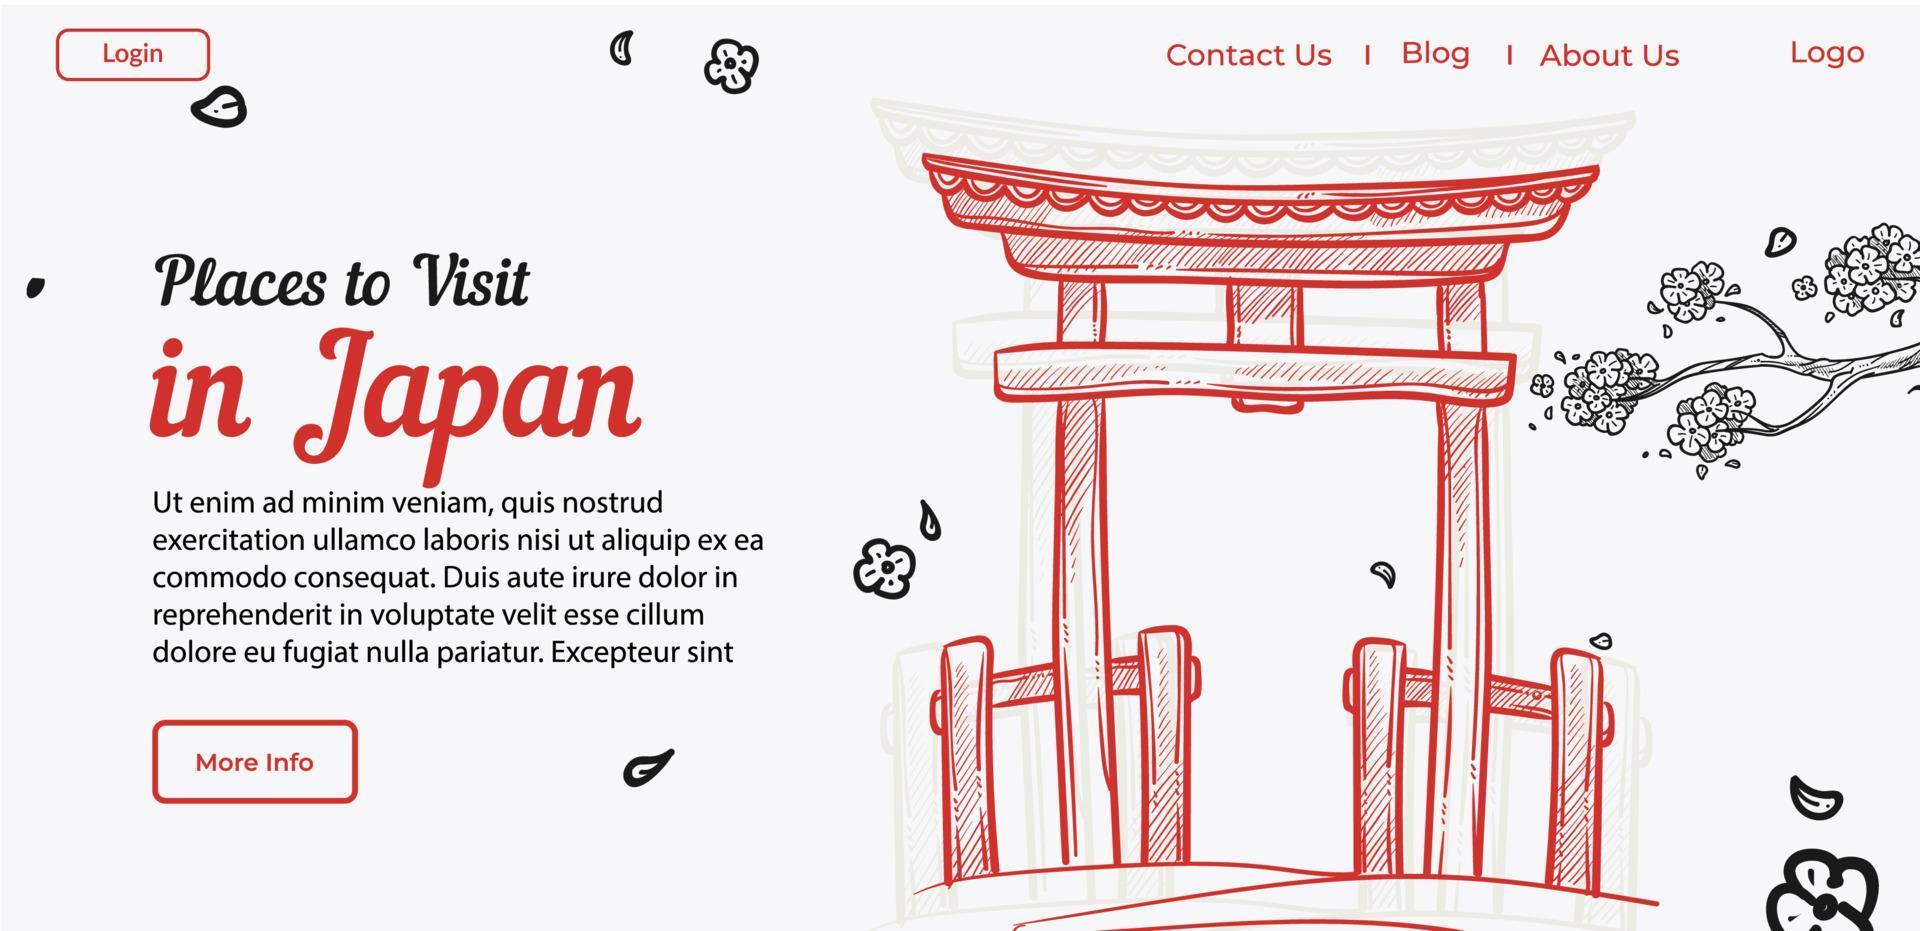 platser till besök i japan guide för turister uppkopplad vektor